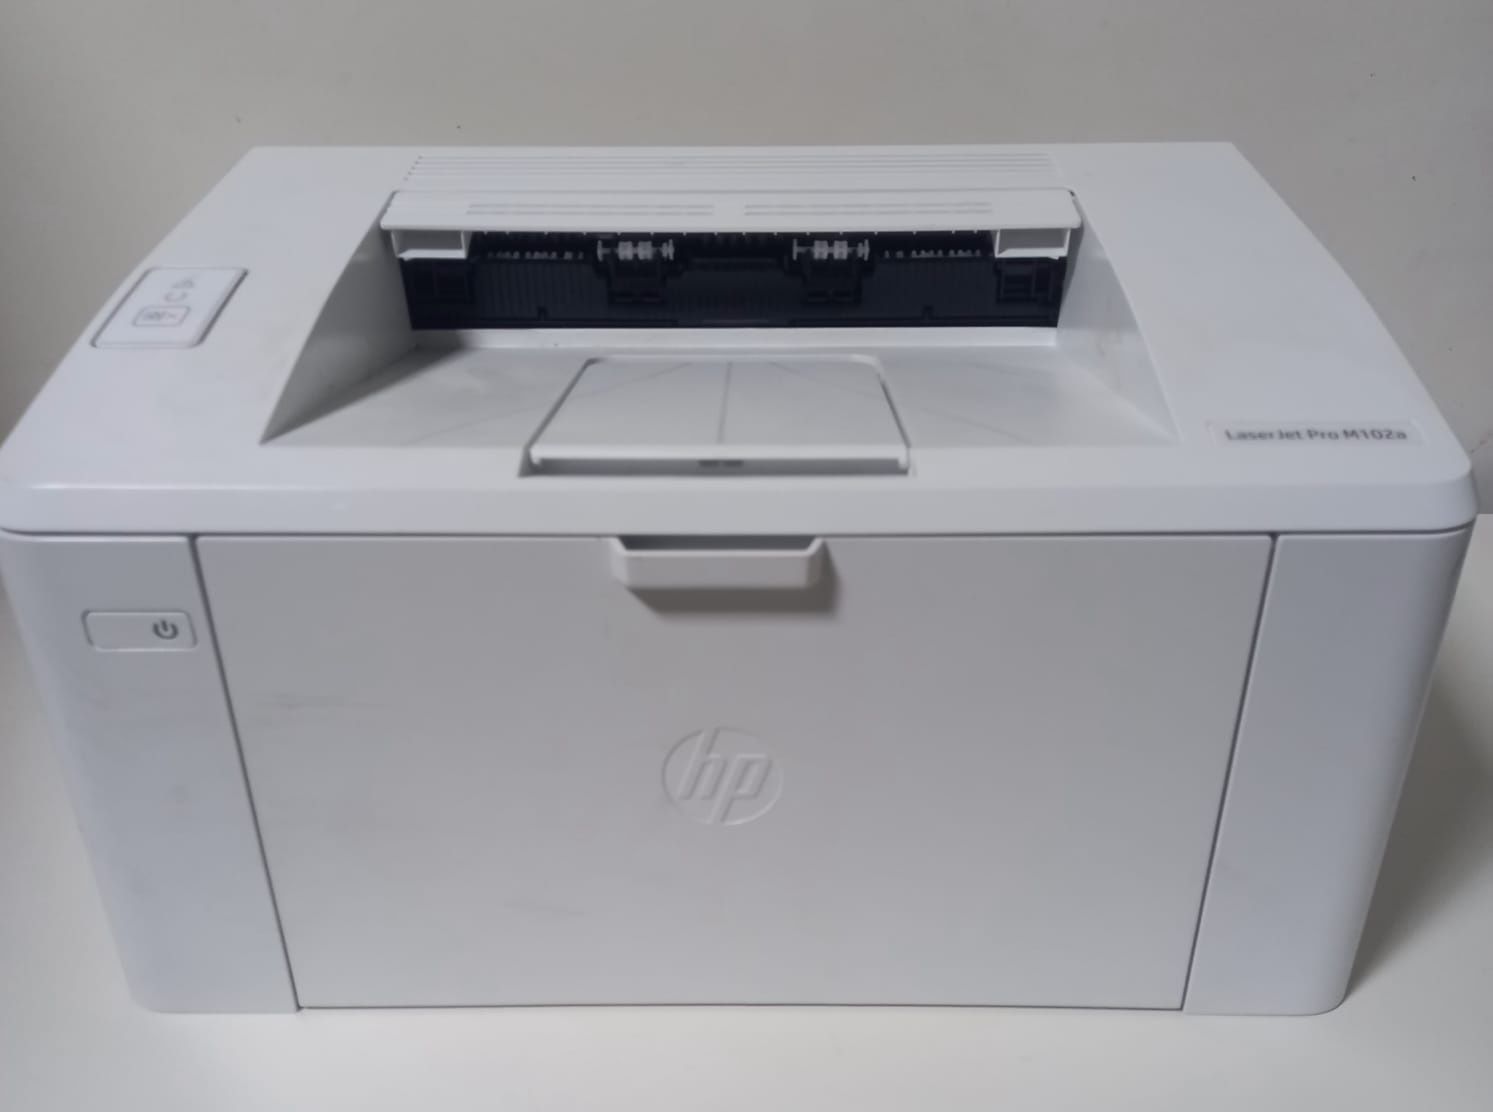 Принтер лазерный HP LaserJet PRO M102a
Поддержка ОС   Mac OS X, Window